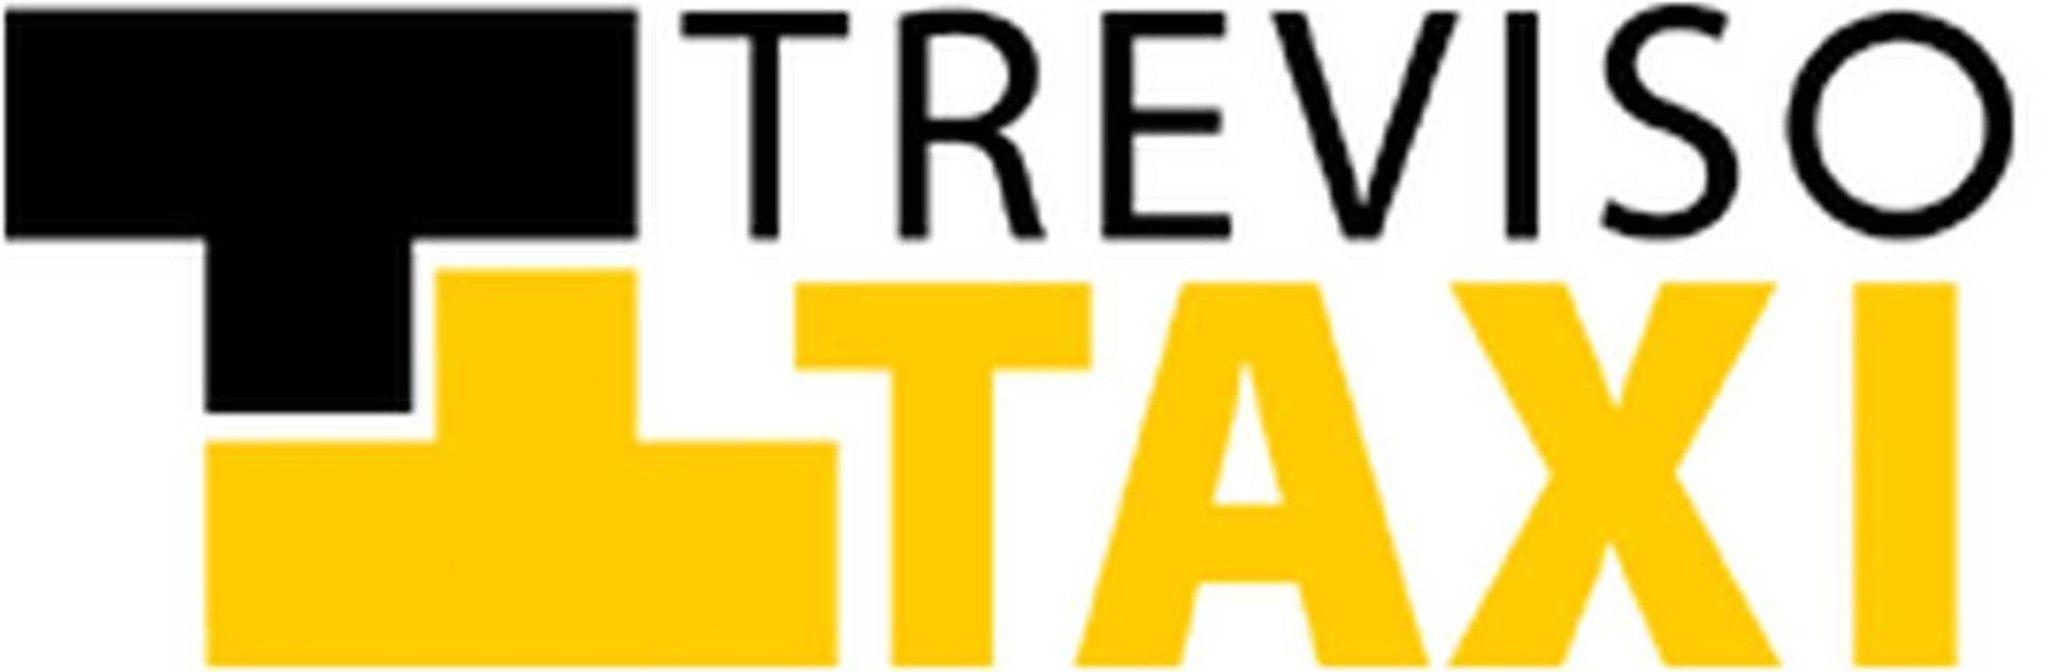 Treviso Logo - Taxi Treviso